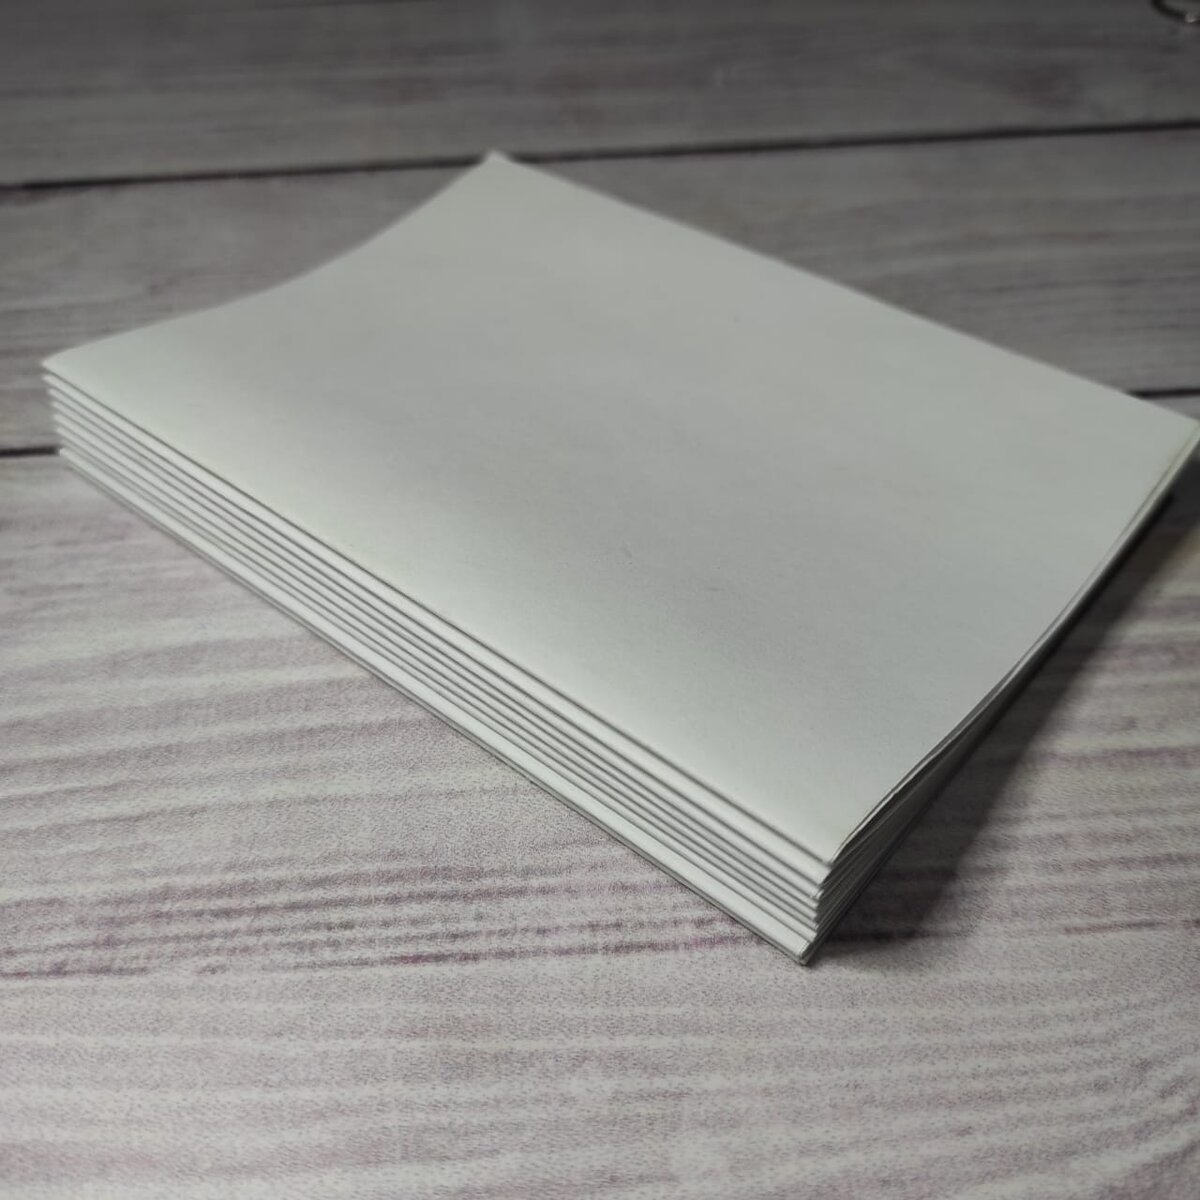 Как сделать блокнот из бумаги своими руками